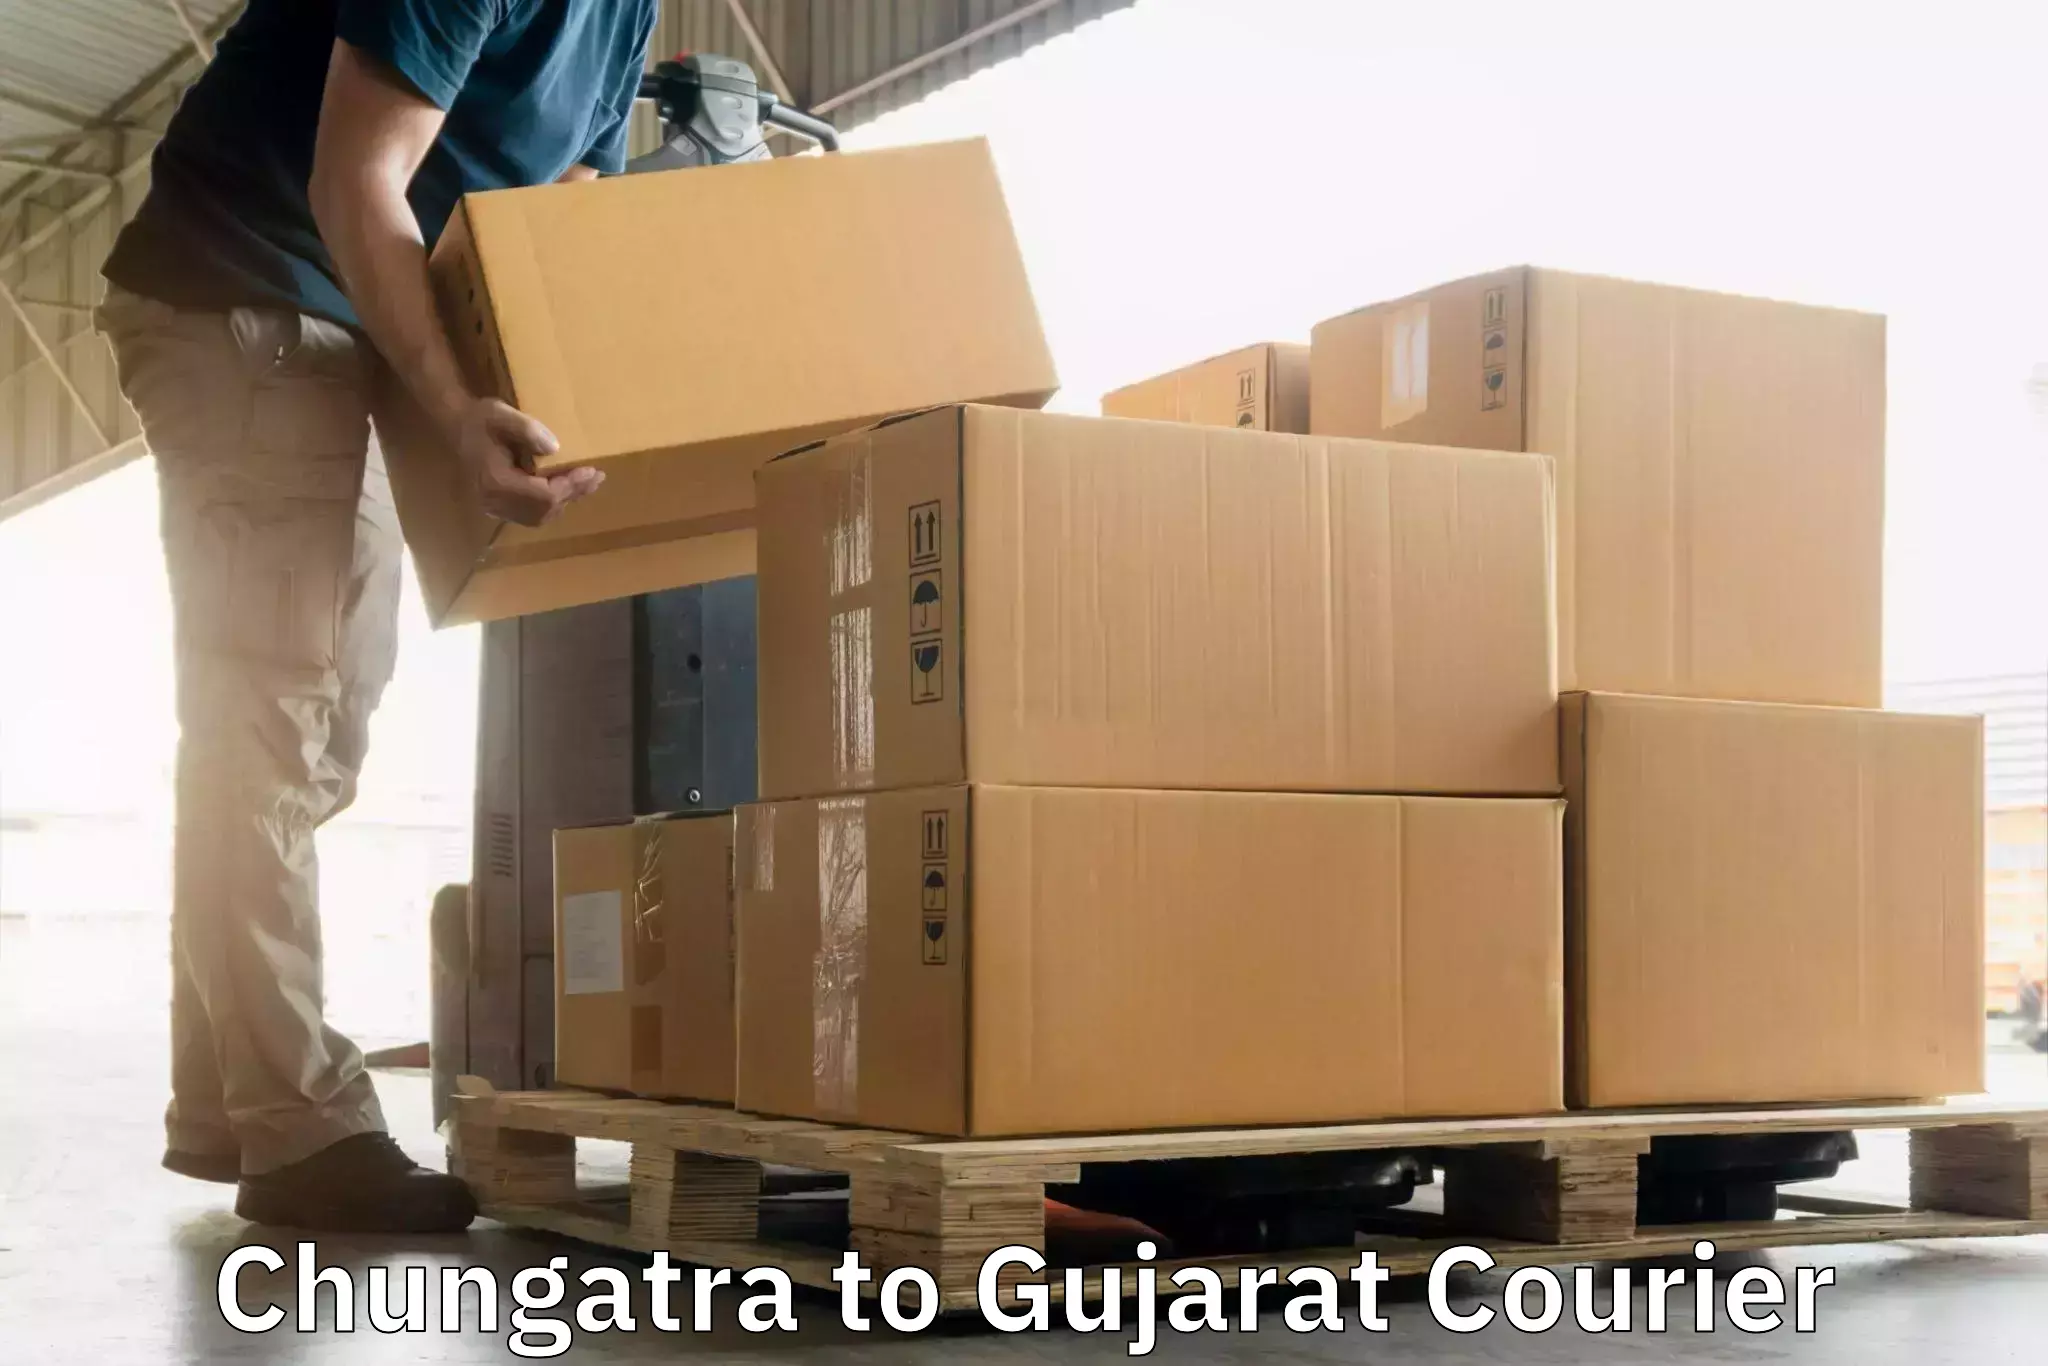 Efficient cargo services Chungatra to Talala